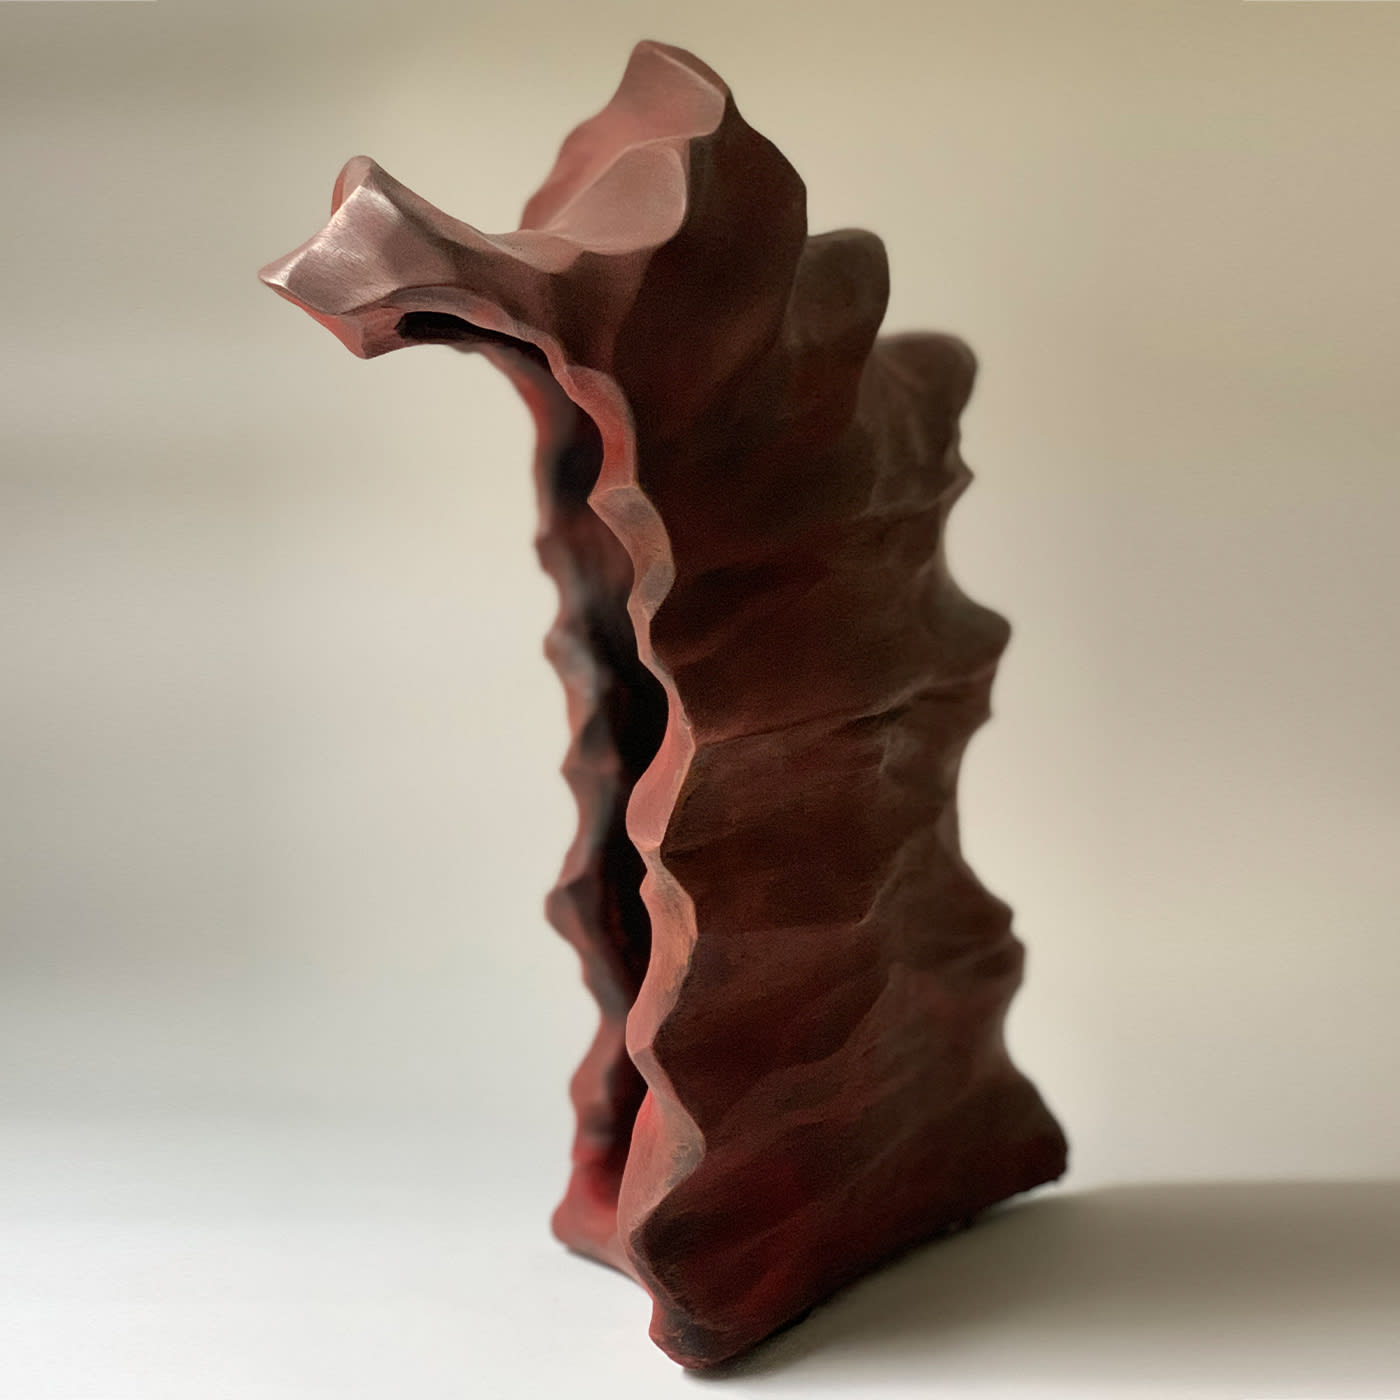 Spazio Terreno Sculpture - Silvia Garau